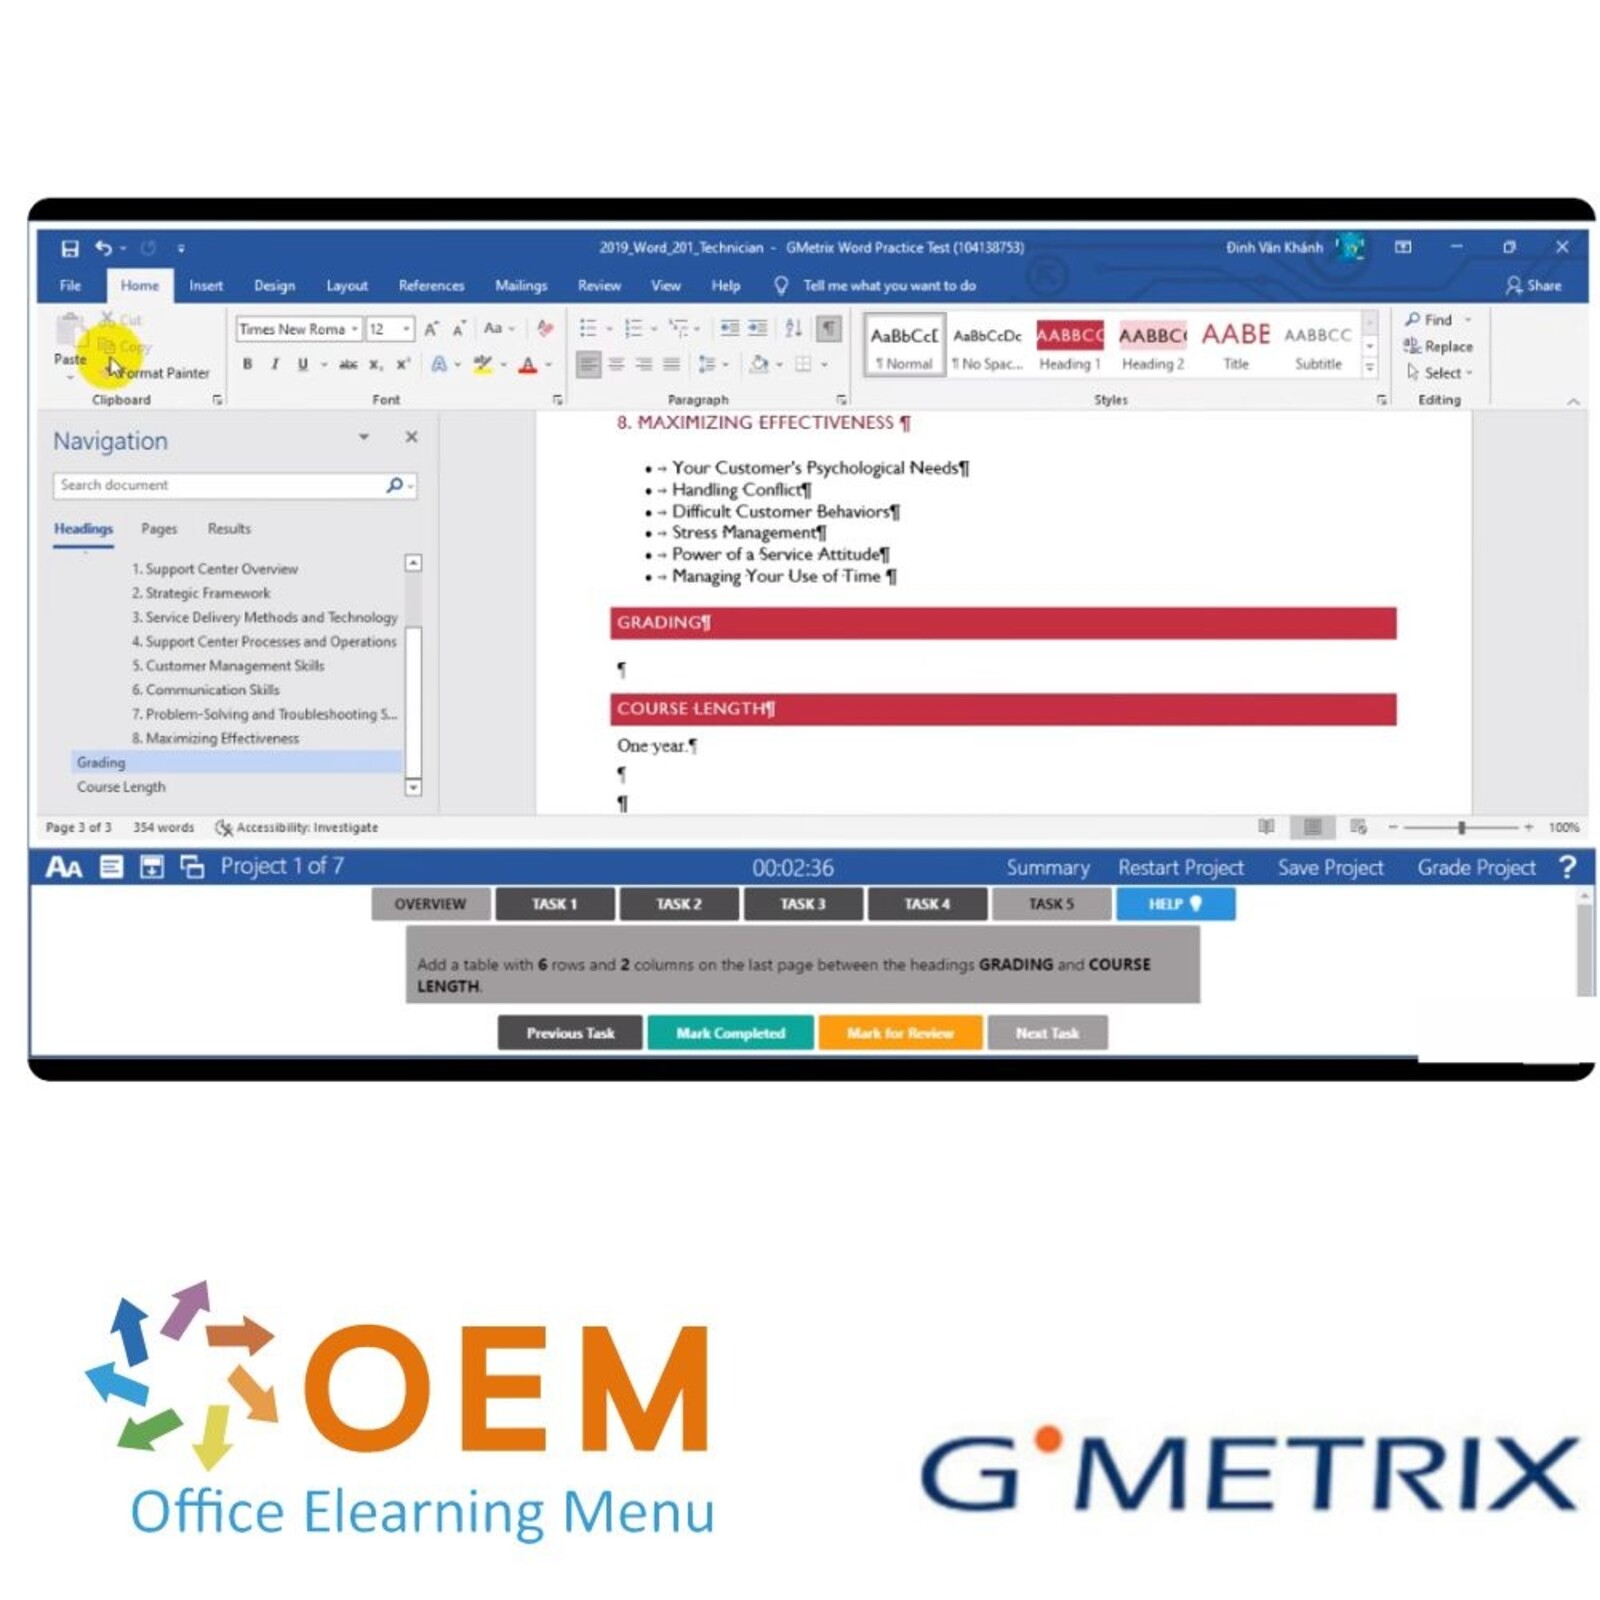 GMetrix MO-400 Outlook 2019 365 GMetrix Practice Exam